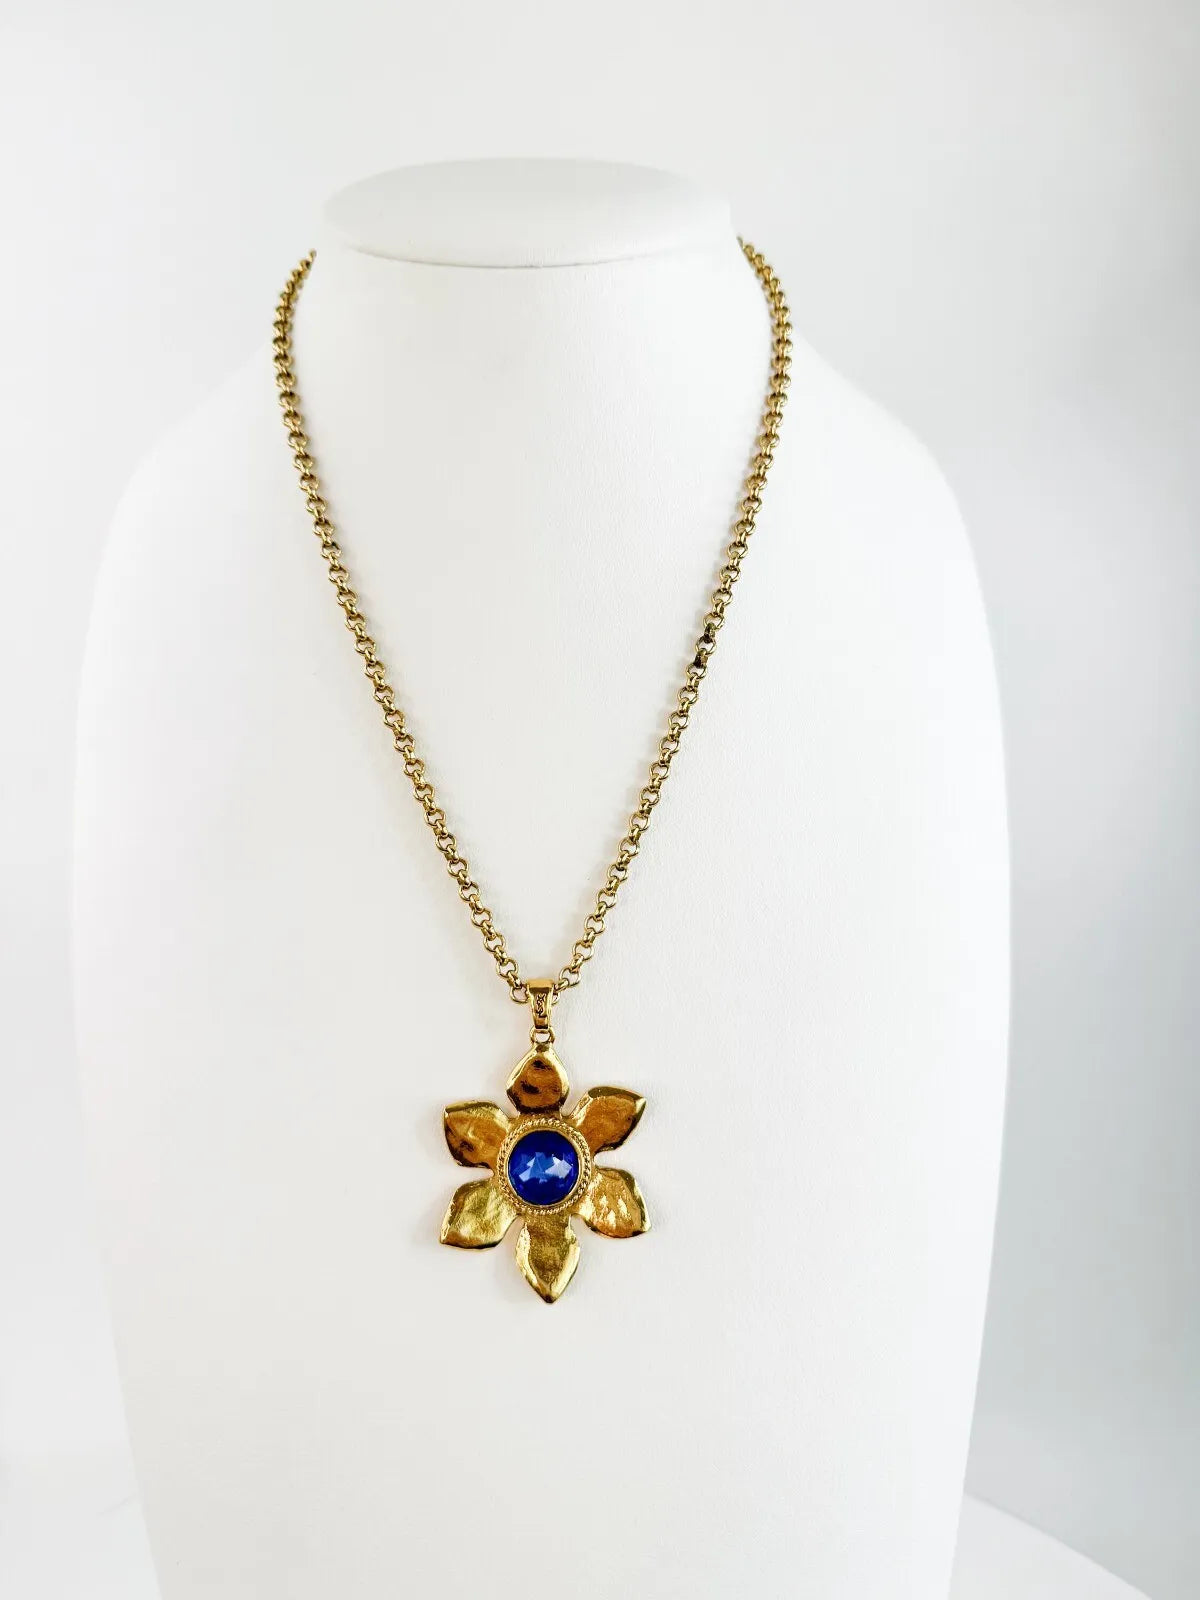 YSL Necklace, Yves Saint Laurent Vintage Necklace, Gold Tone Flower necklace, Sapphire necklace Floral Pendant Glass Opera Necklace Vintage